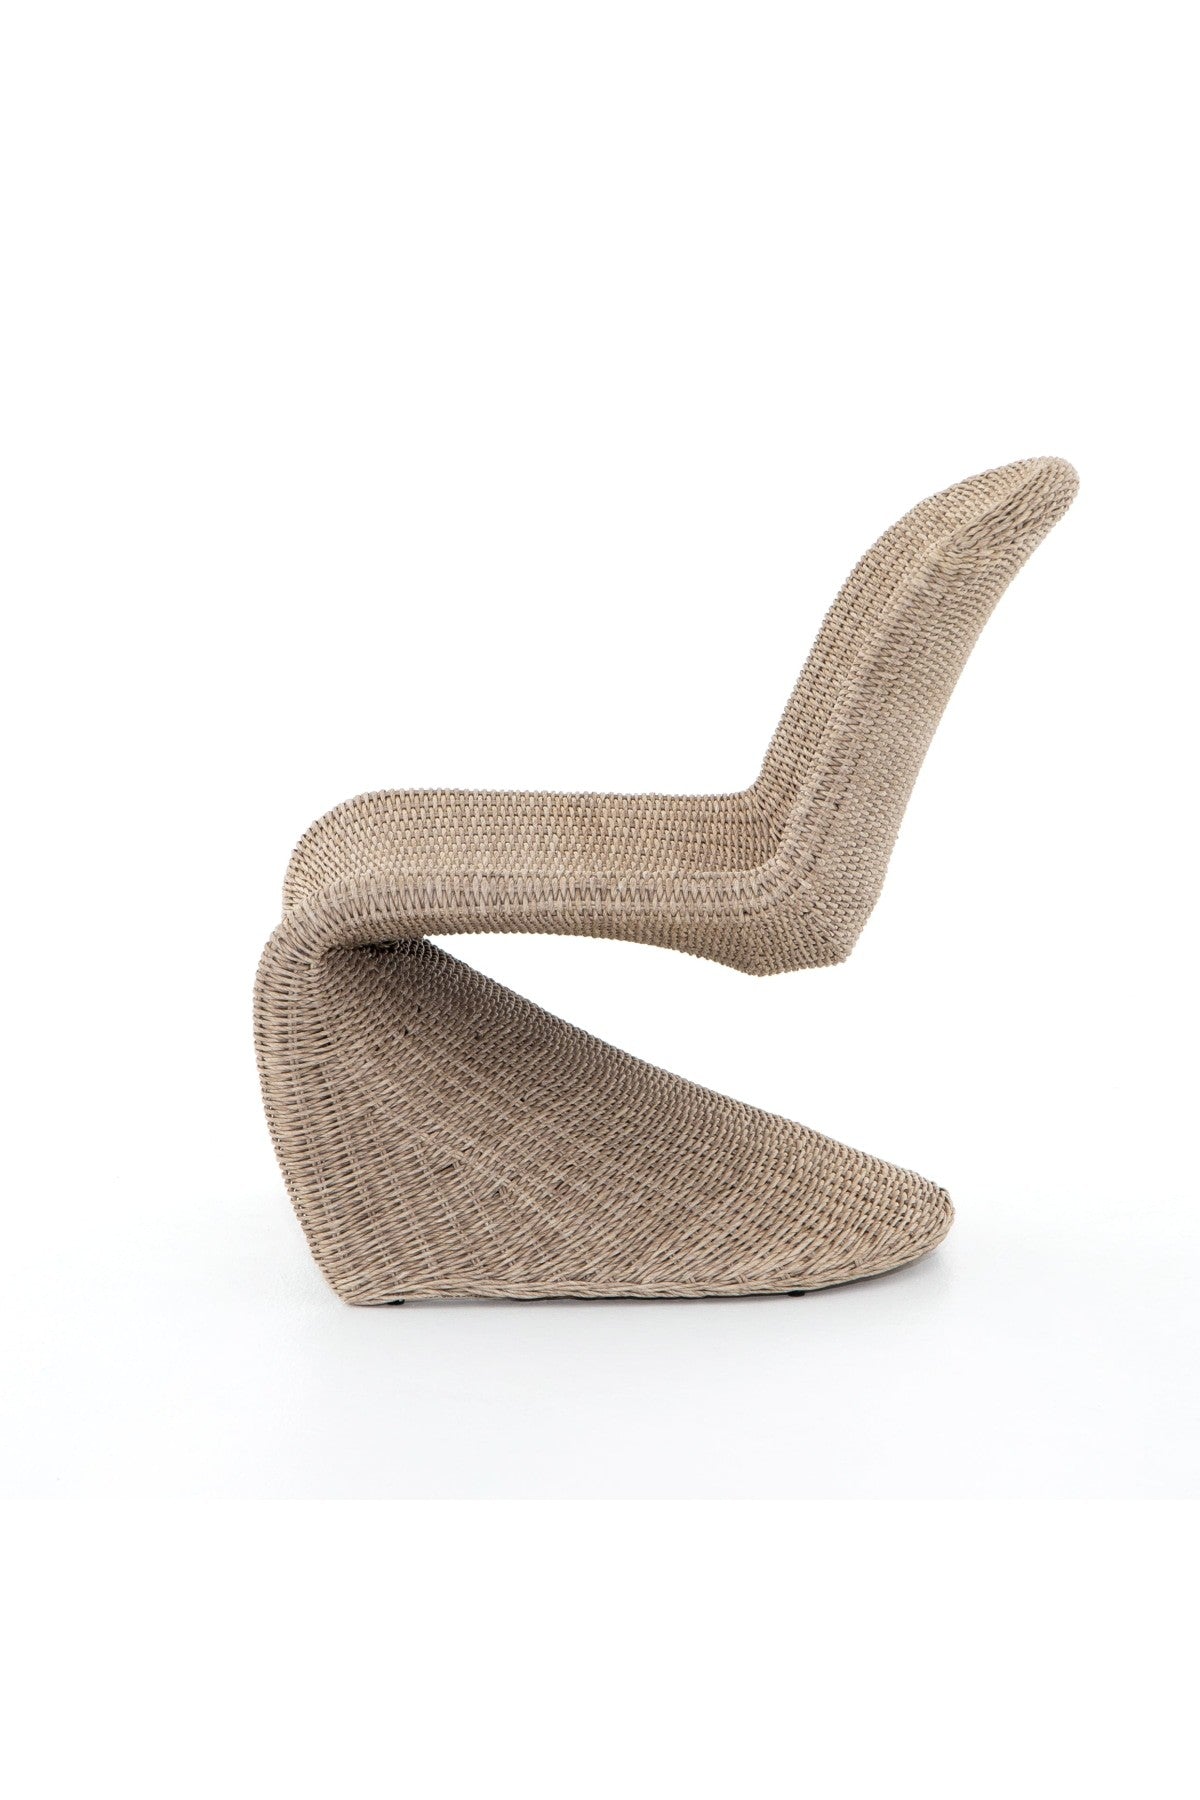 Klein Outdoor Accent Chair - Vintage White